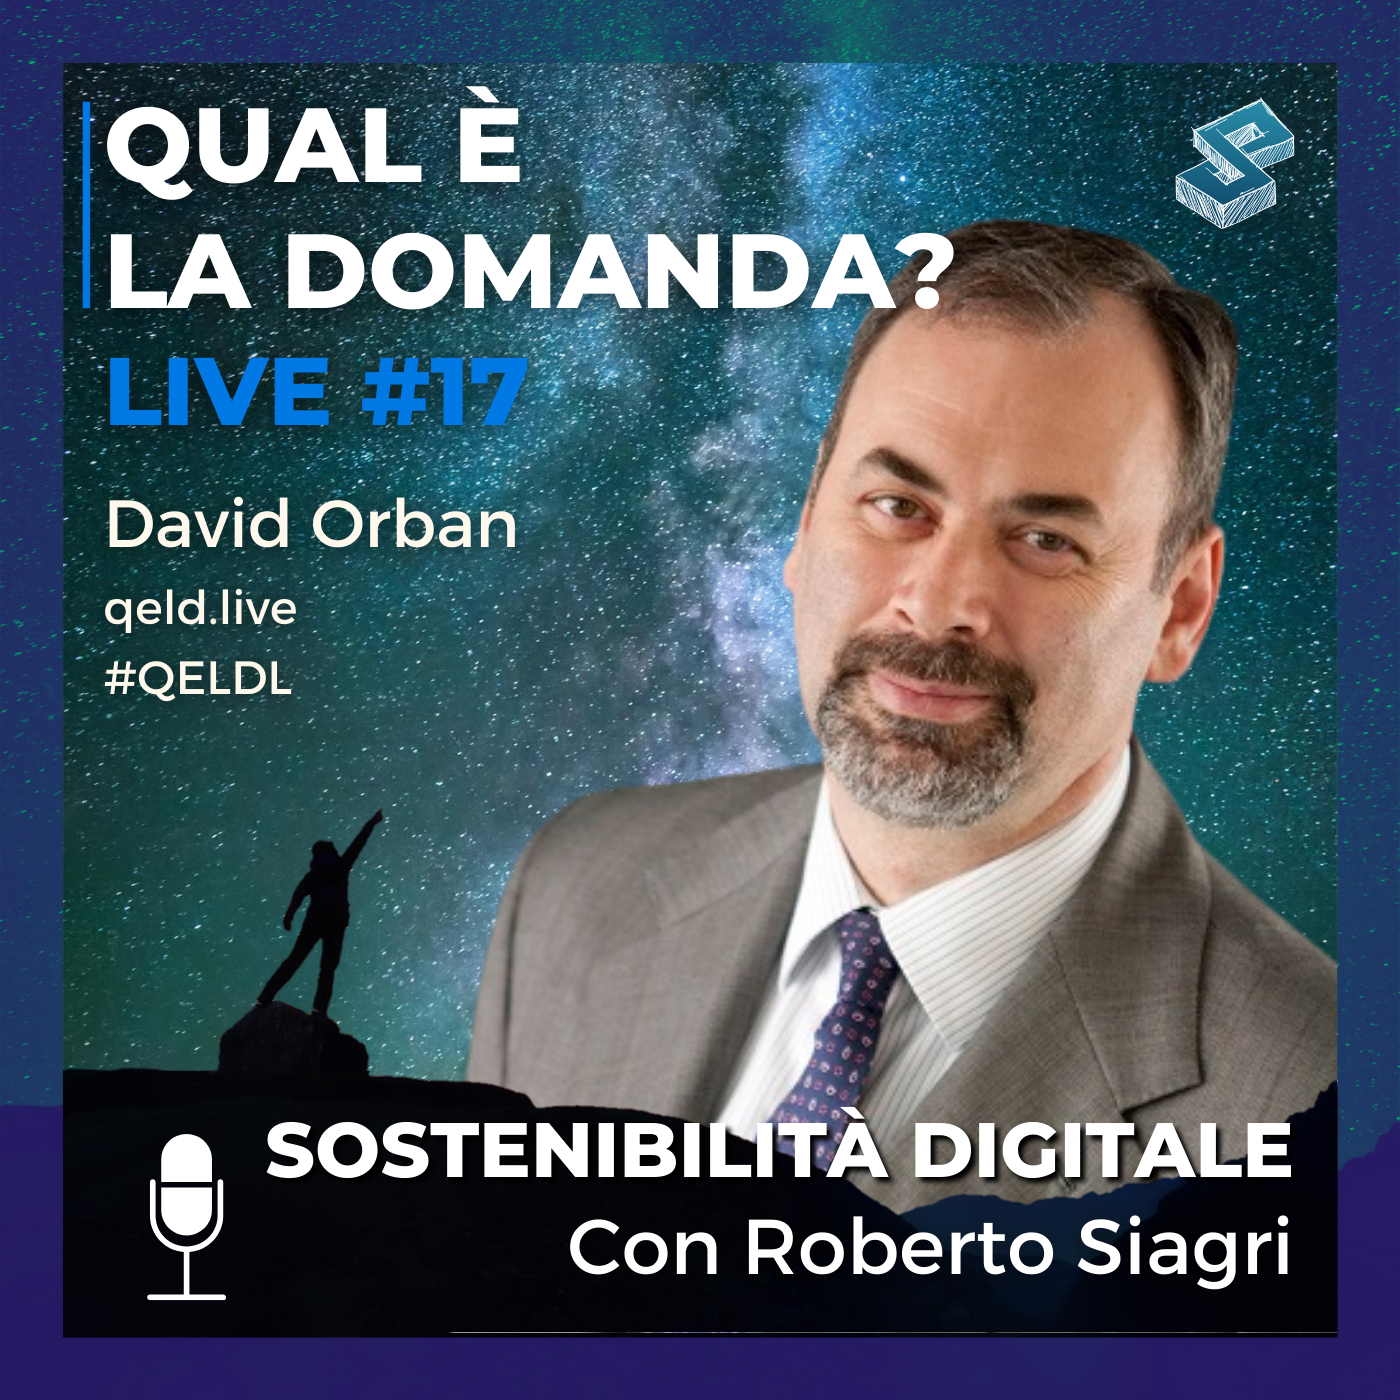 Sostenibilità digitale con Roberto Siagri - QELDL #17